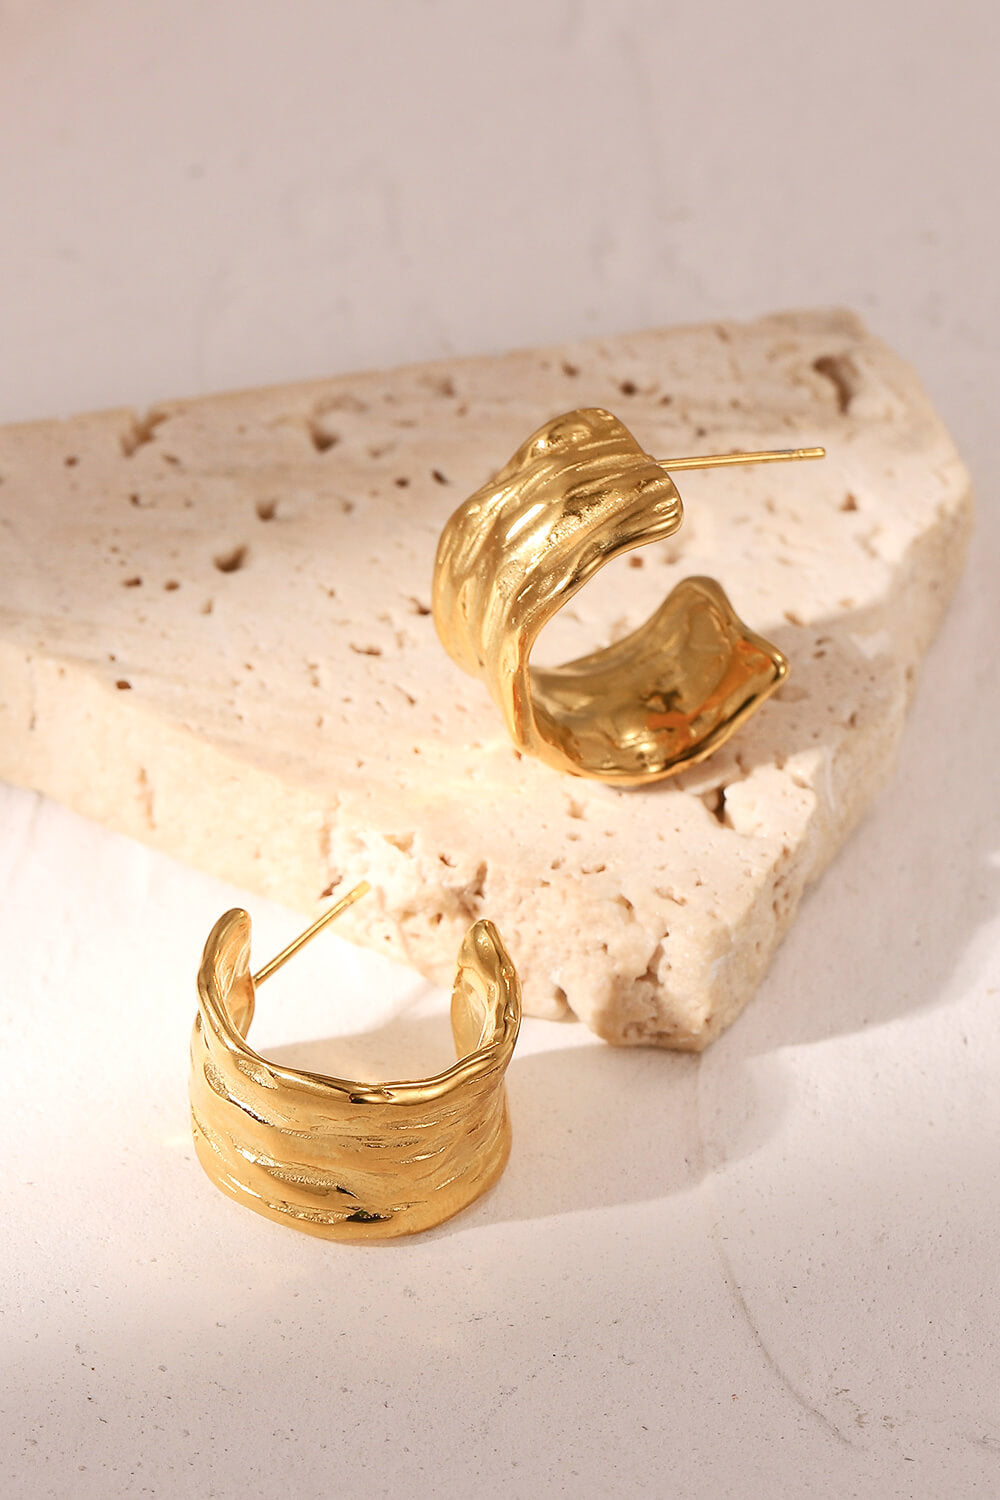 Pendientes de aro en forma de C martillados chapados en oro de 18 quilates